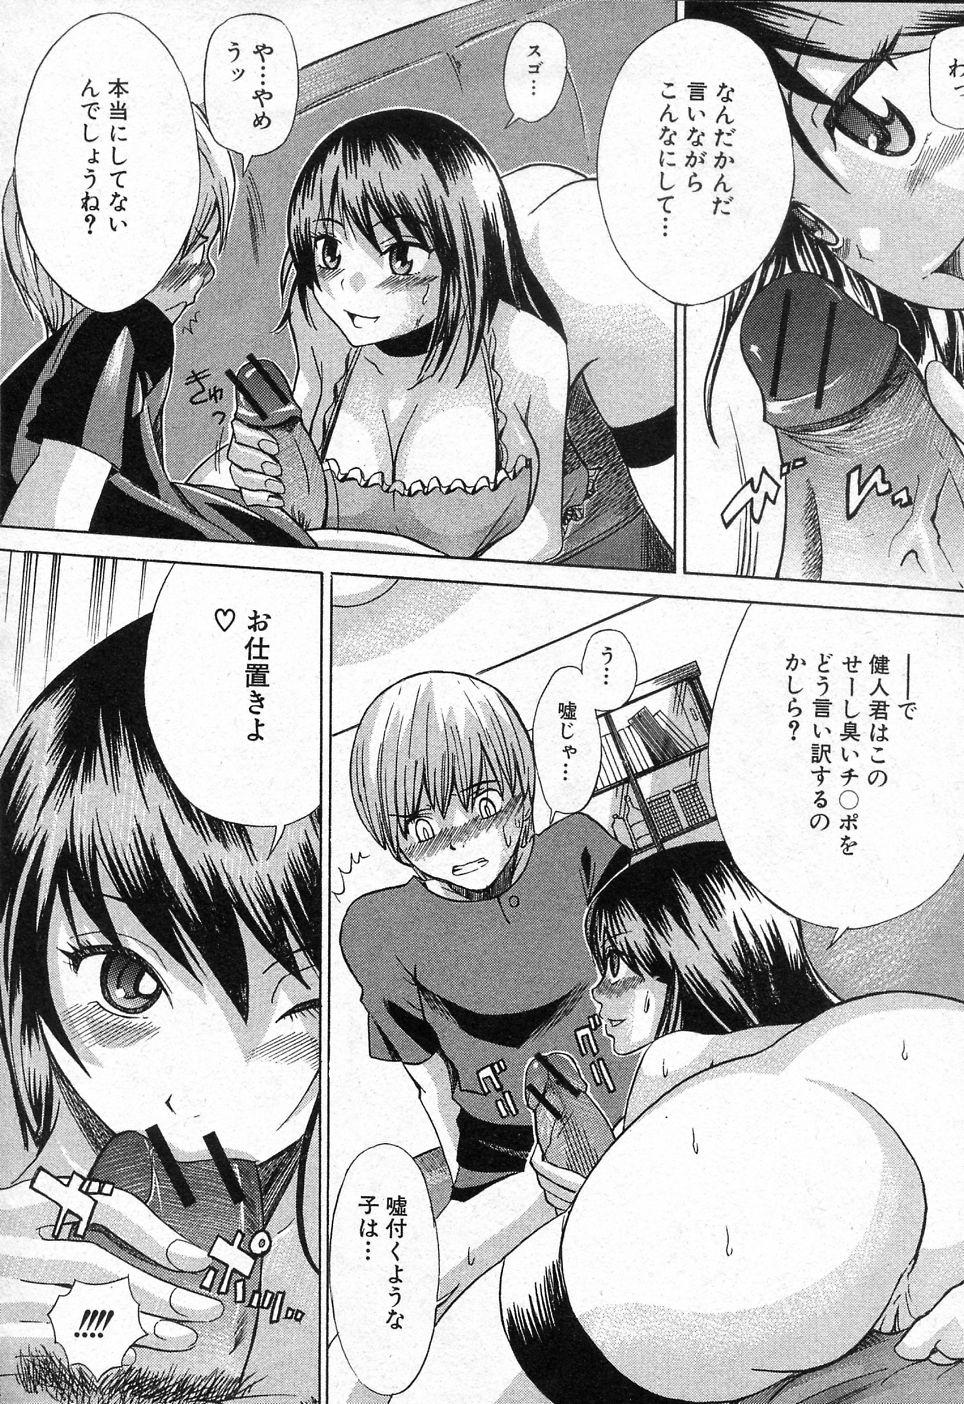 4some Tonari no Reika san Interview - Page 8